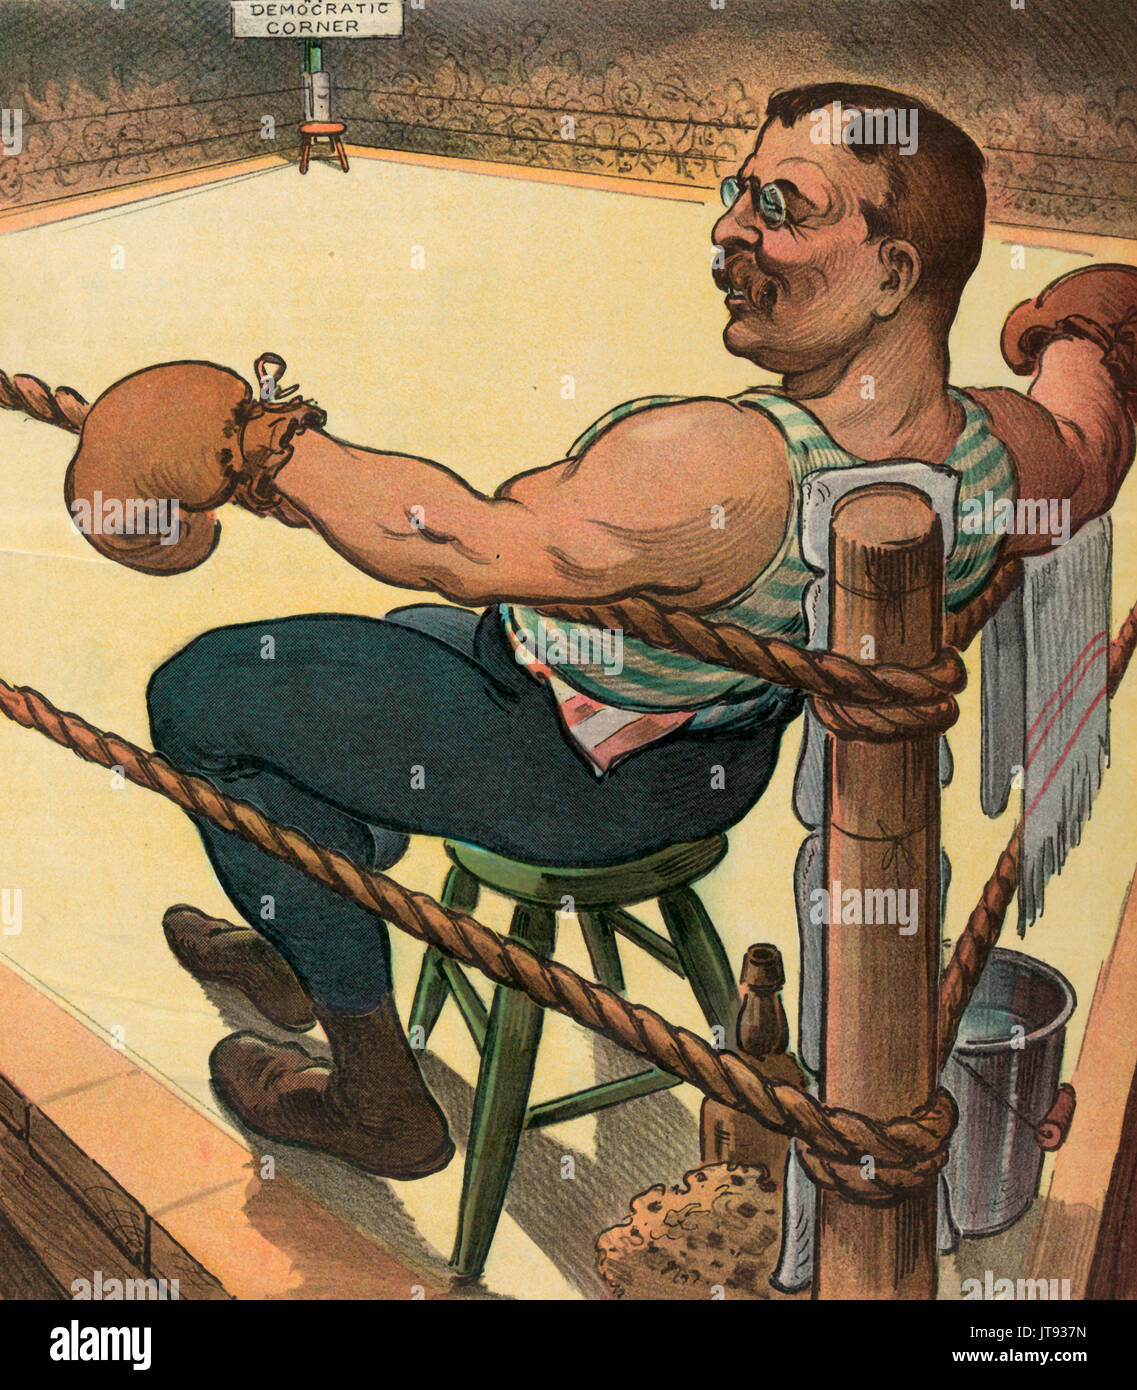 "Schreckliche Teddy' wartet auf "Unbekannt". Abbildung zeigt Präsident Theodore Roosevelt als Boxer sitzt auf einem Hocker mit seine Arme ruhen auf die Seile in der Nähe der Ecke ein Boxring und wartet darauf, dass ein Challenger den Ring zu betreten und in einen freien Stuhl in der 'Demokratischen Ecke" sitzen. Die politische Karikatur, 1904 Stockfoto